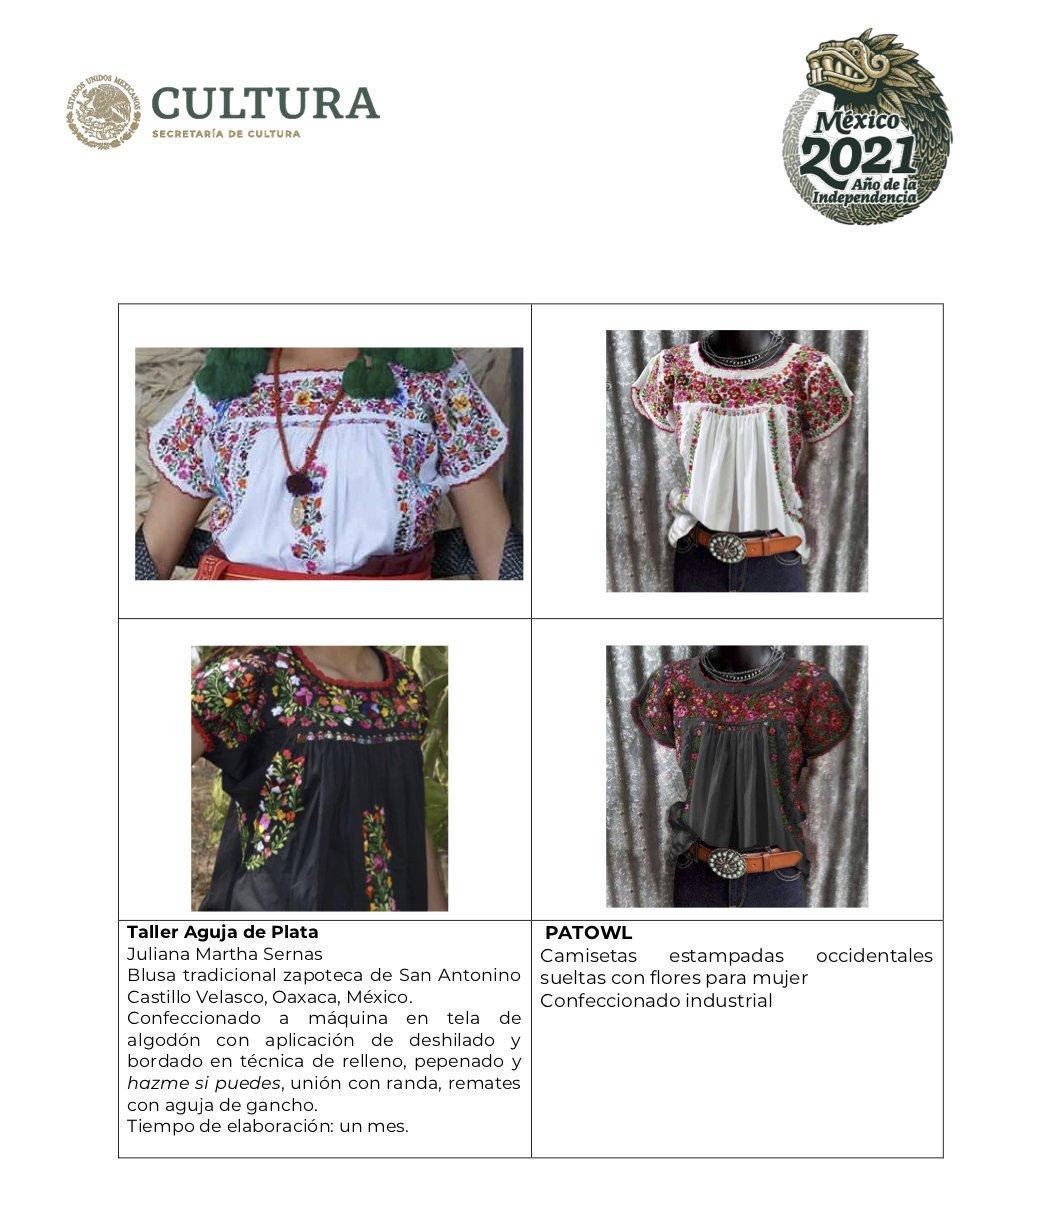 Secretaría de Cultura acusó a Zara, Anthropologie y Potowl de usar diseños oaxaqueños en su colección de ropa 